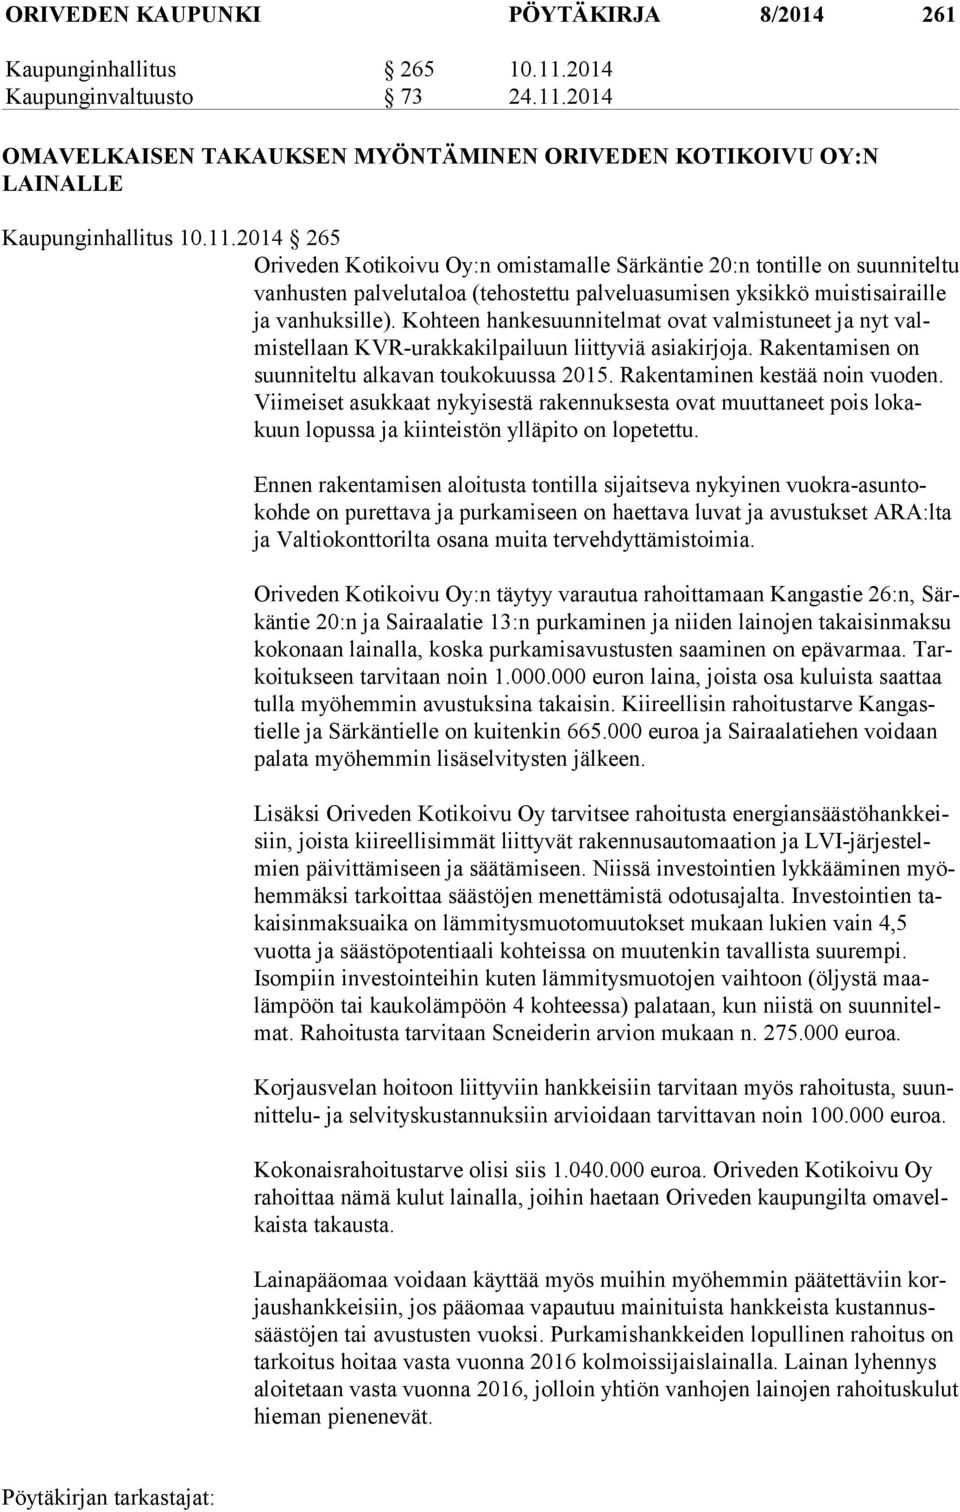 2014 OMAVELKAISEN TAKAUKSEN MYÖNTÄMINEN ORIVEDEN KOTIKOIVU OY:N LAINALLE Kaupunginhallitus 10.11.